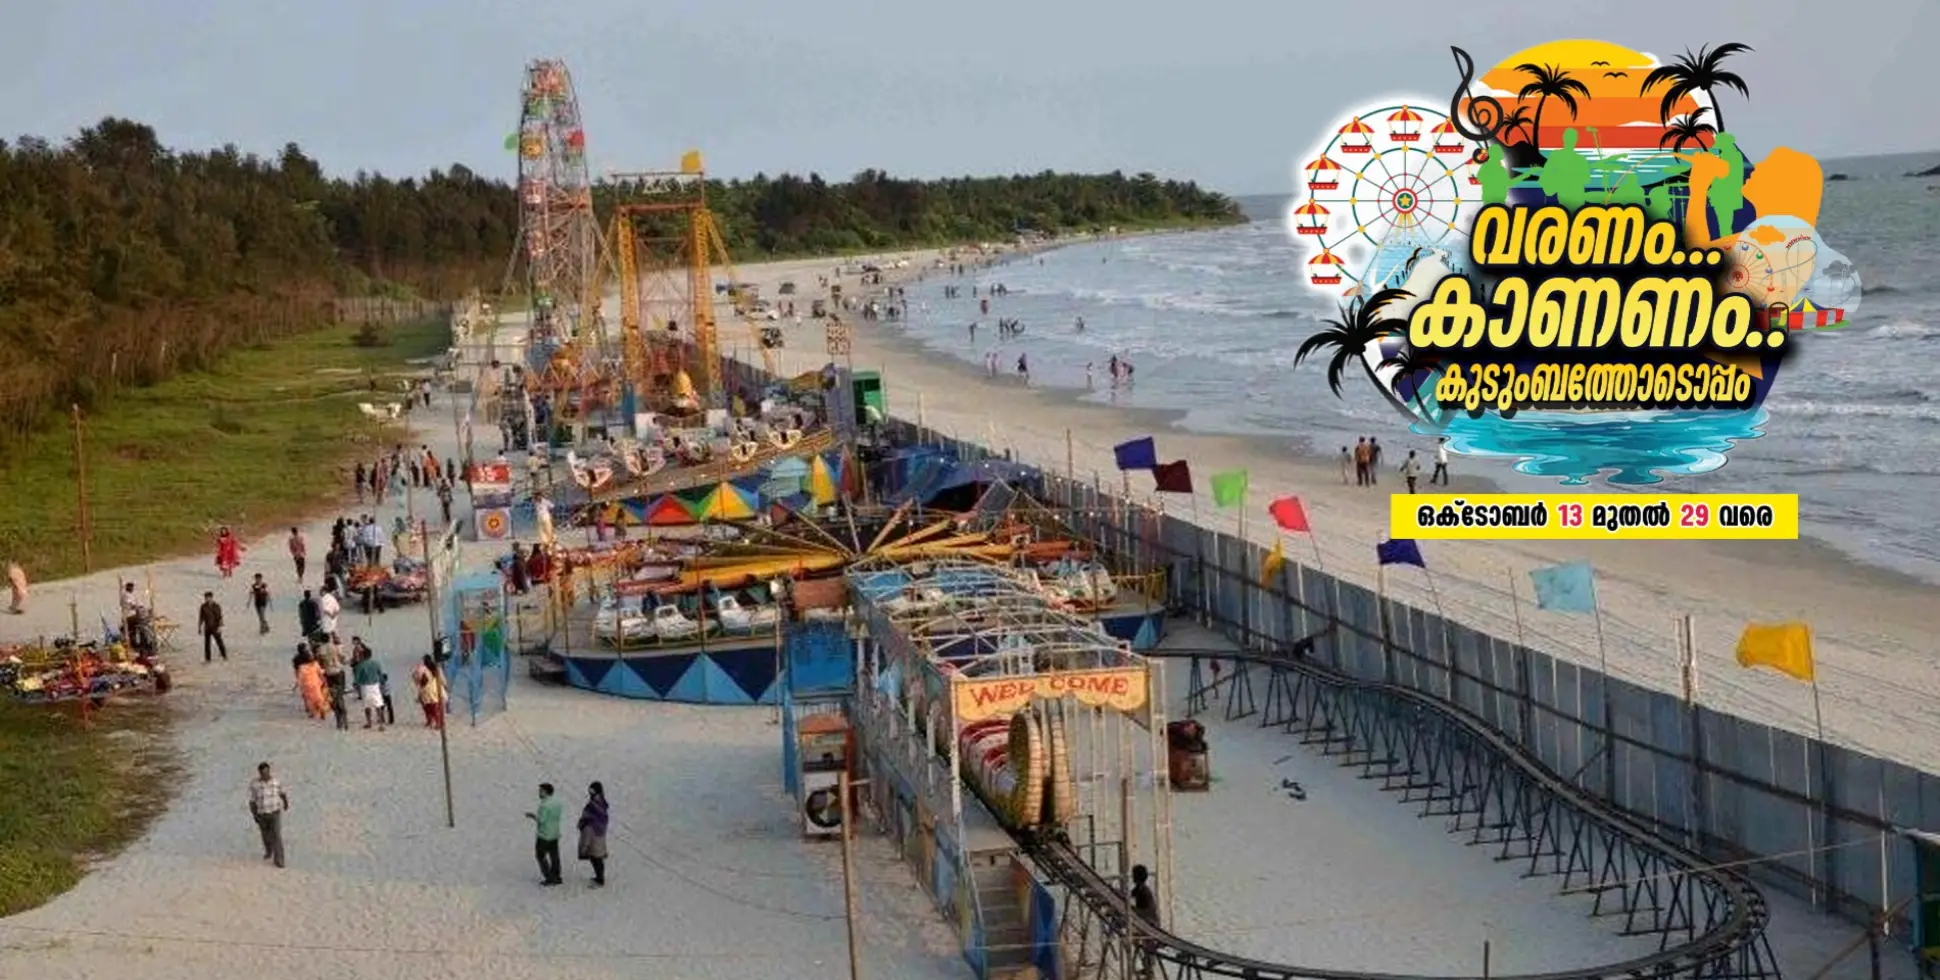 #BeachDussehra | ഒരുങ്ങിക്കോളൂ ഇനി ഡ്രൈവിംഗ് ബീച്ചിലേക്ക്; അറബിക്കടലിന്റെ നീലി മയിൽ അലങ്കാര വർണ്ണങ്ങളുടെ വിസ്മയക്കാഴ്ച ഒരുങ്ങുന്നു 